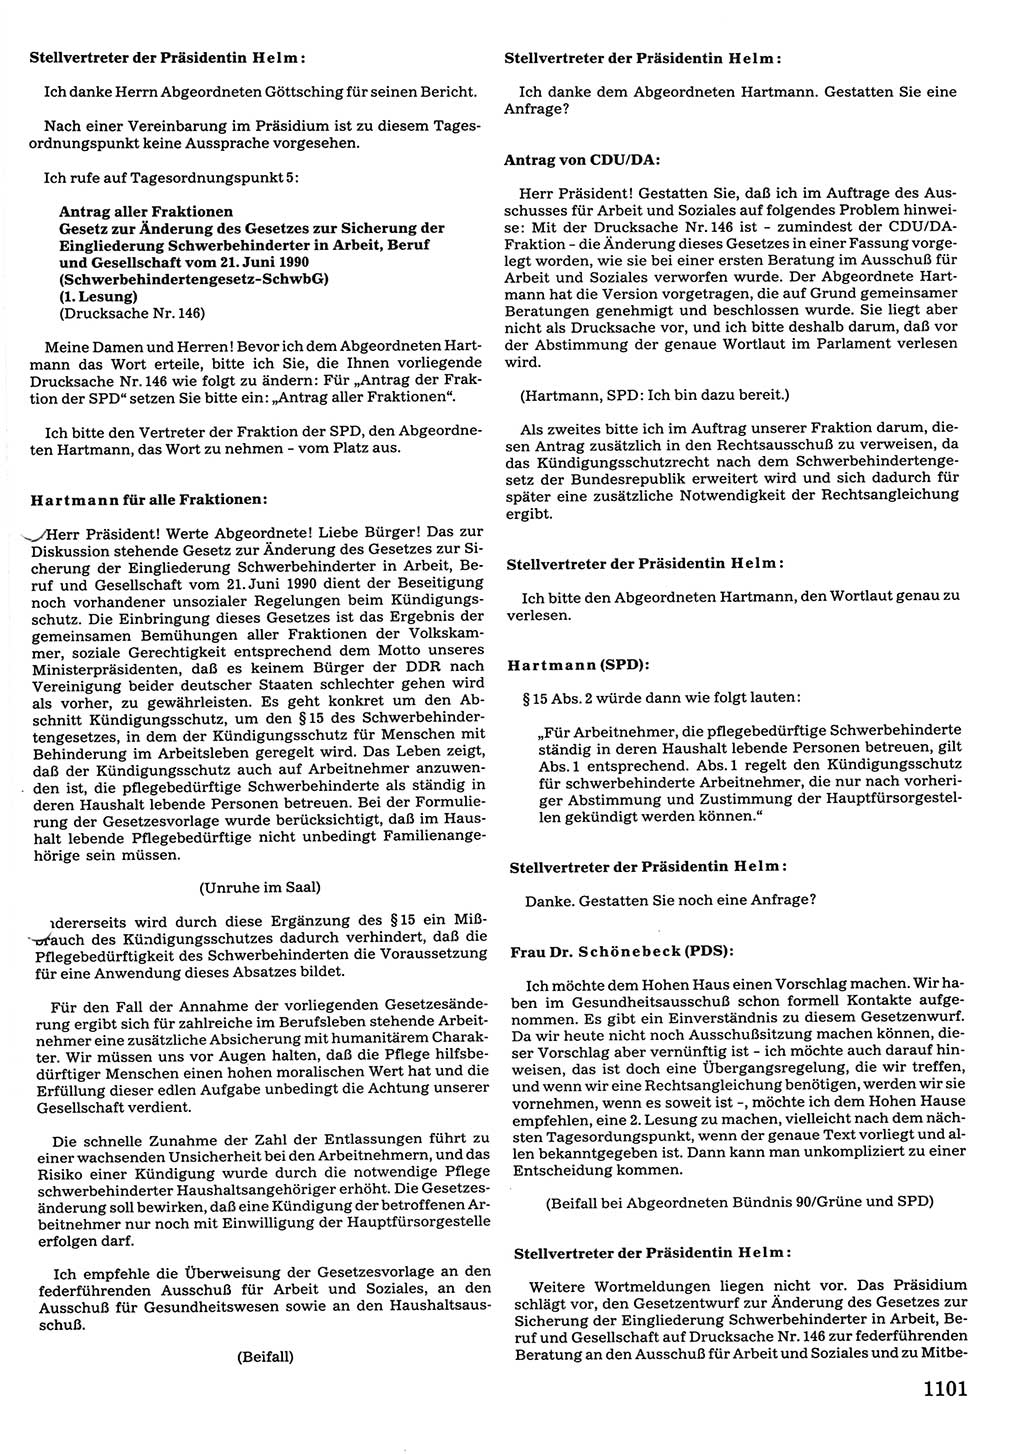 Tagungen der Volkskammer (VK) der Deutschen Demokratischen Republik (DDR), 10. Wahlperiode 1990, Seite 1101 (VK. DDR 10. WP. 1990, Prot. Tg. 1-38, 5.4.-2.10.1990, S. 1101)